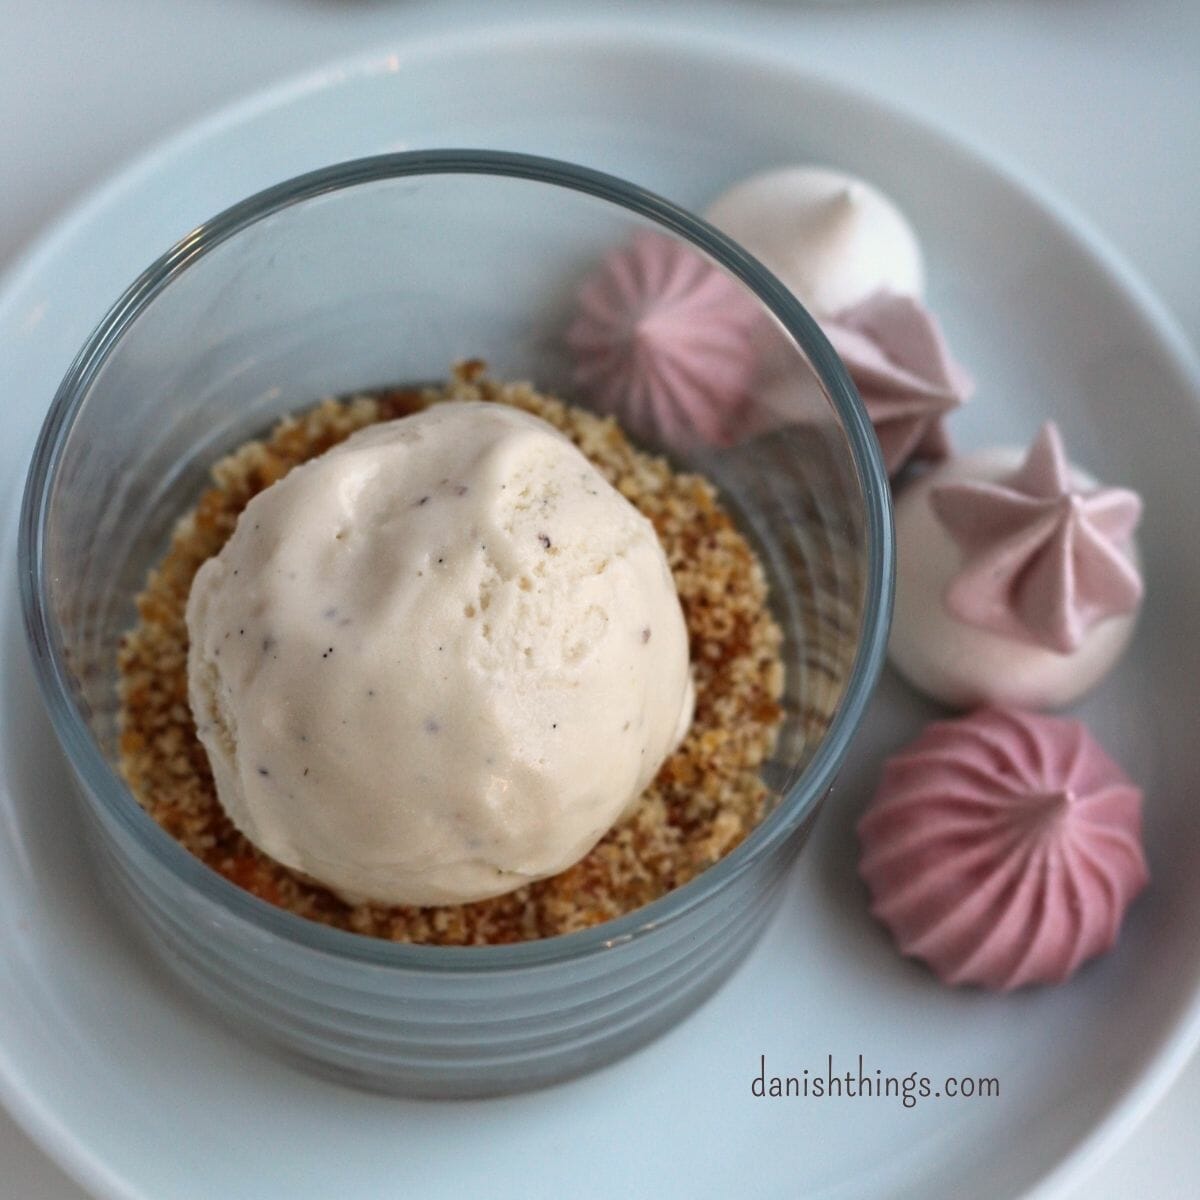 Verdens bedste vaniljeis – lav selv den superlækre flødeis, der udnytter dine vaniljestænger optimalt. En cremet og lækker is som kan spises året rundt. Her får du opskriften, forslag til tilbehør, og hvis du vil variere din flødeis, til valg af fyld. Find opskrifter og inspiration til årets gang på danishthings.com #DanishThings #vaniljeis #vanilje #flødeis #Verdensbedste #bedste #cremet #is #klassiker #dessert